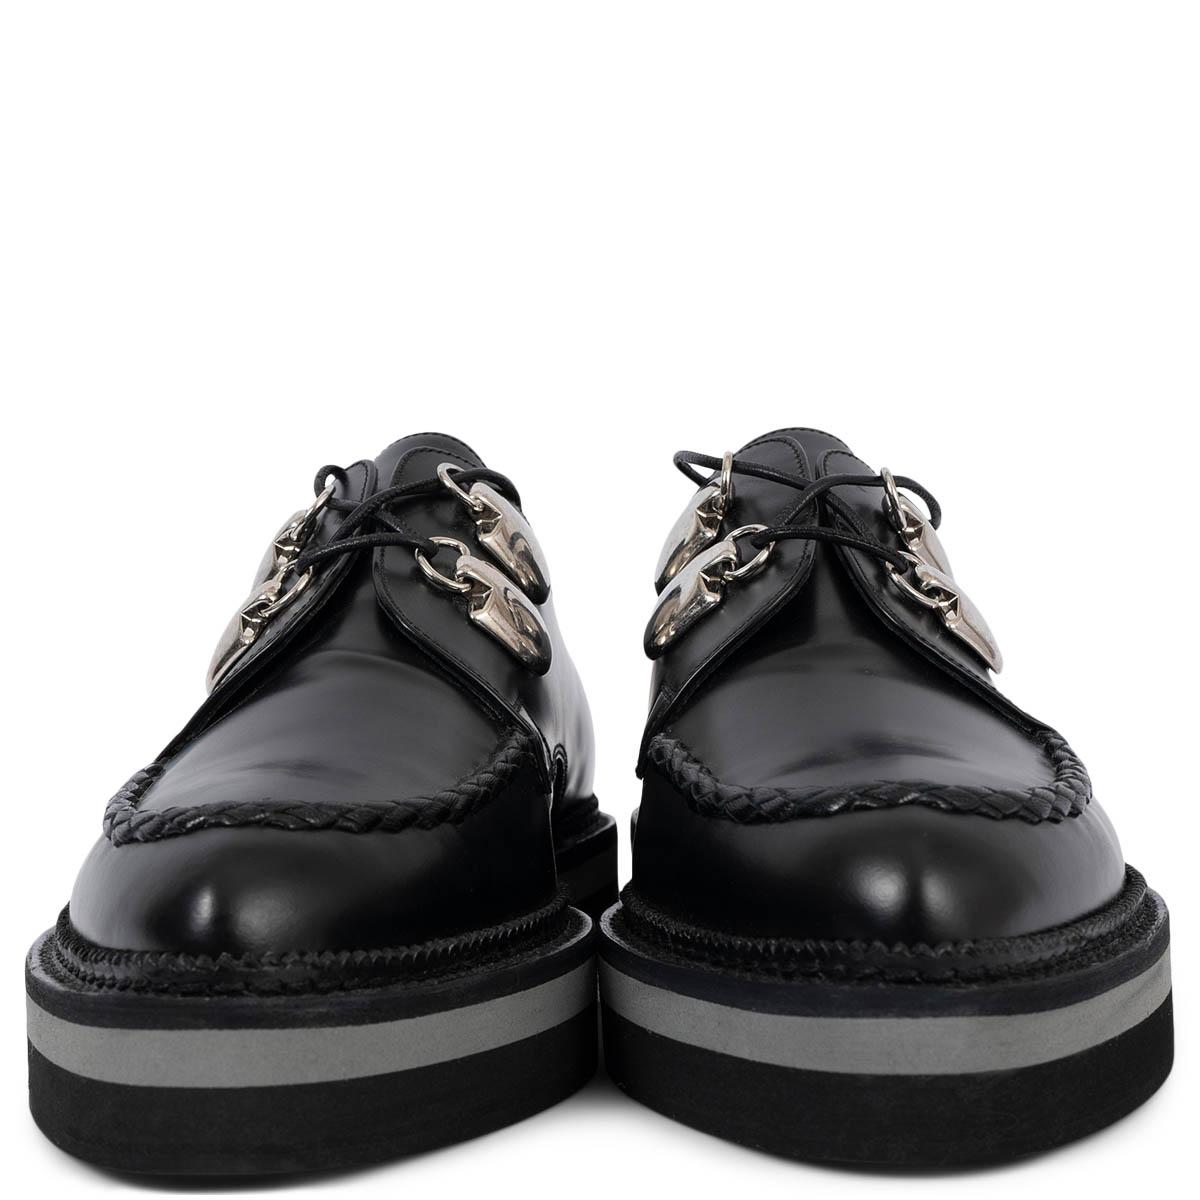 Chaussures compensées à lacets 100% authentiques Alexander McQueen en cuir lisse noir avec détails de quincaillerie argentés. Ils ont été portés et sont en excellent état. Livré avec un sac à poussière. 

Mesures
Taille imprimée	39
Taille des